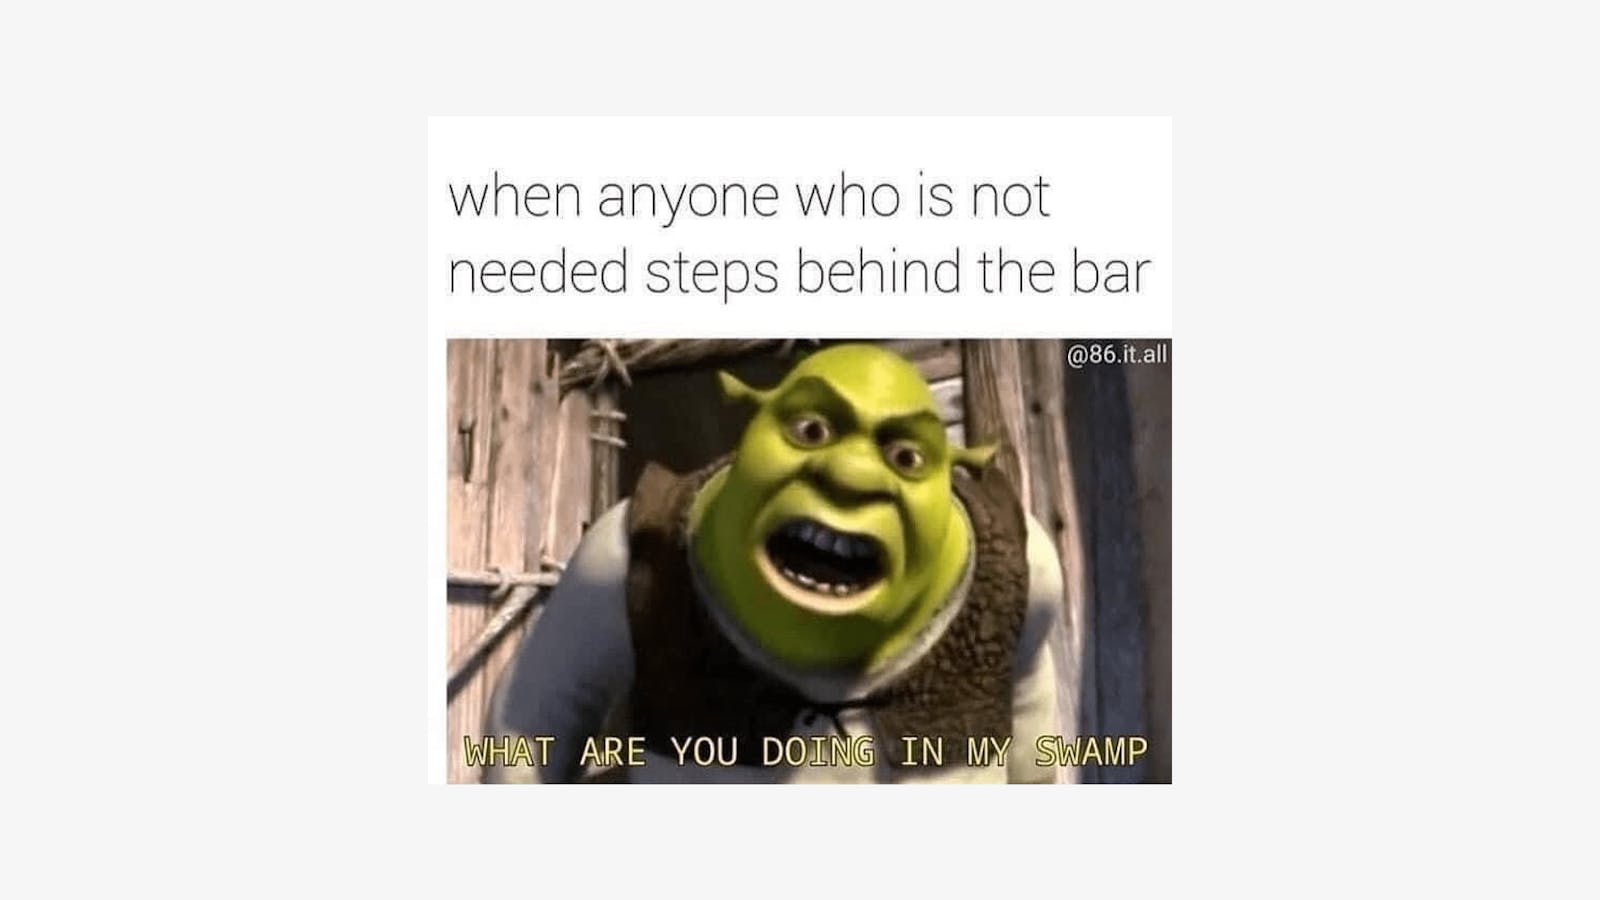 Shrek meme from quarantined bartender. 